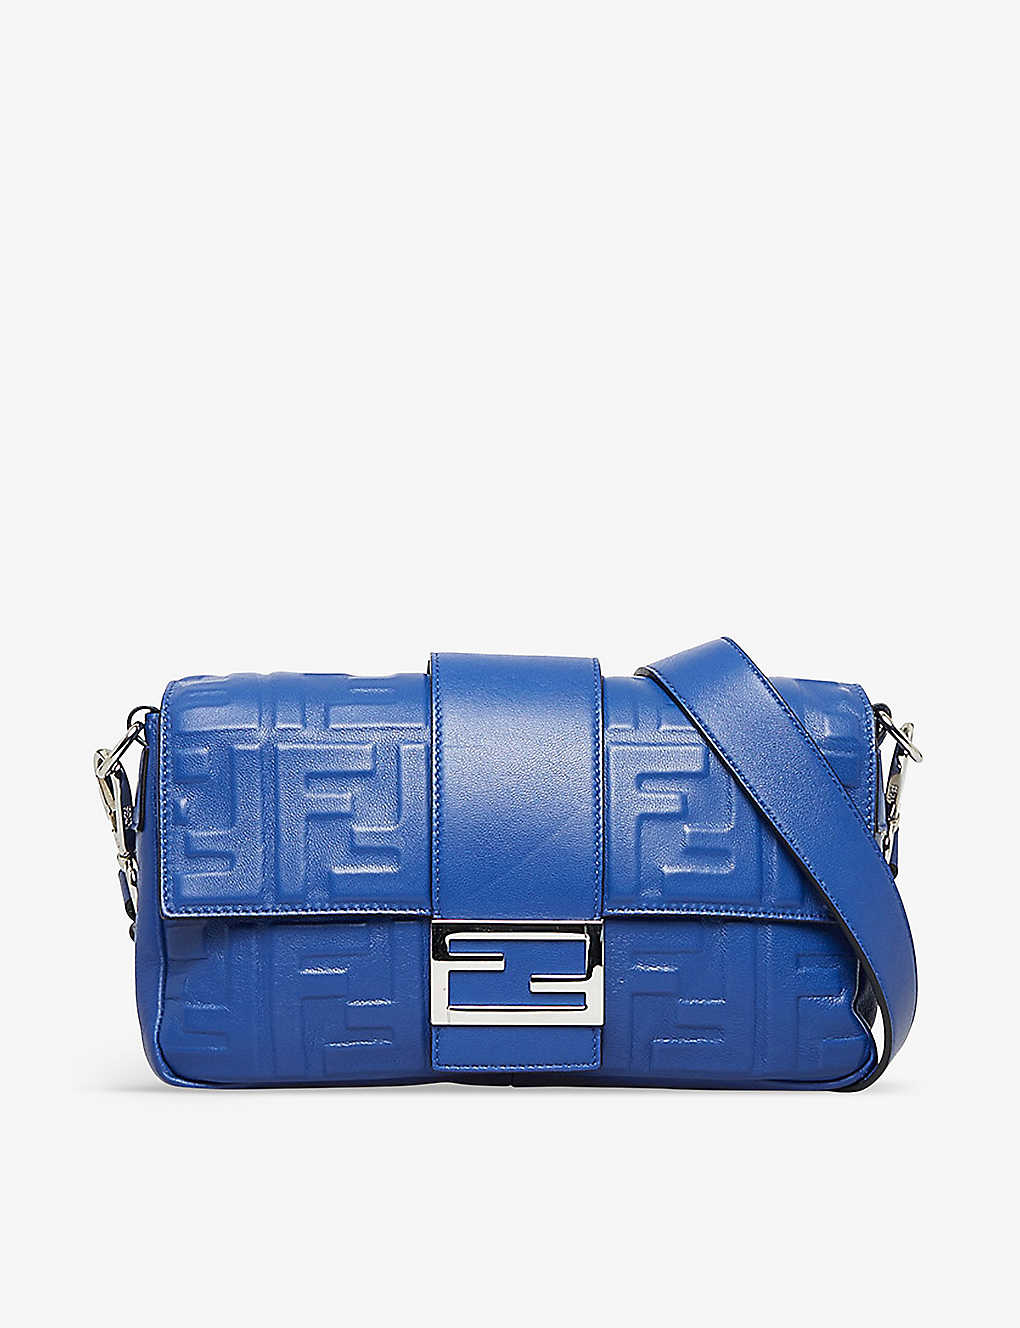 Reselfridges Womens Blue Pre-loved Fendi Baguette Leather Shoulder Bag